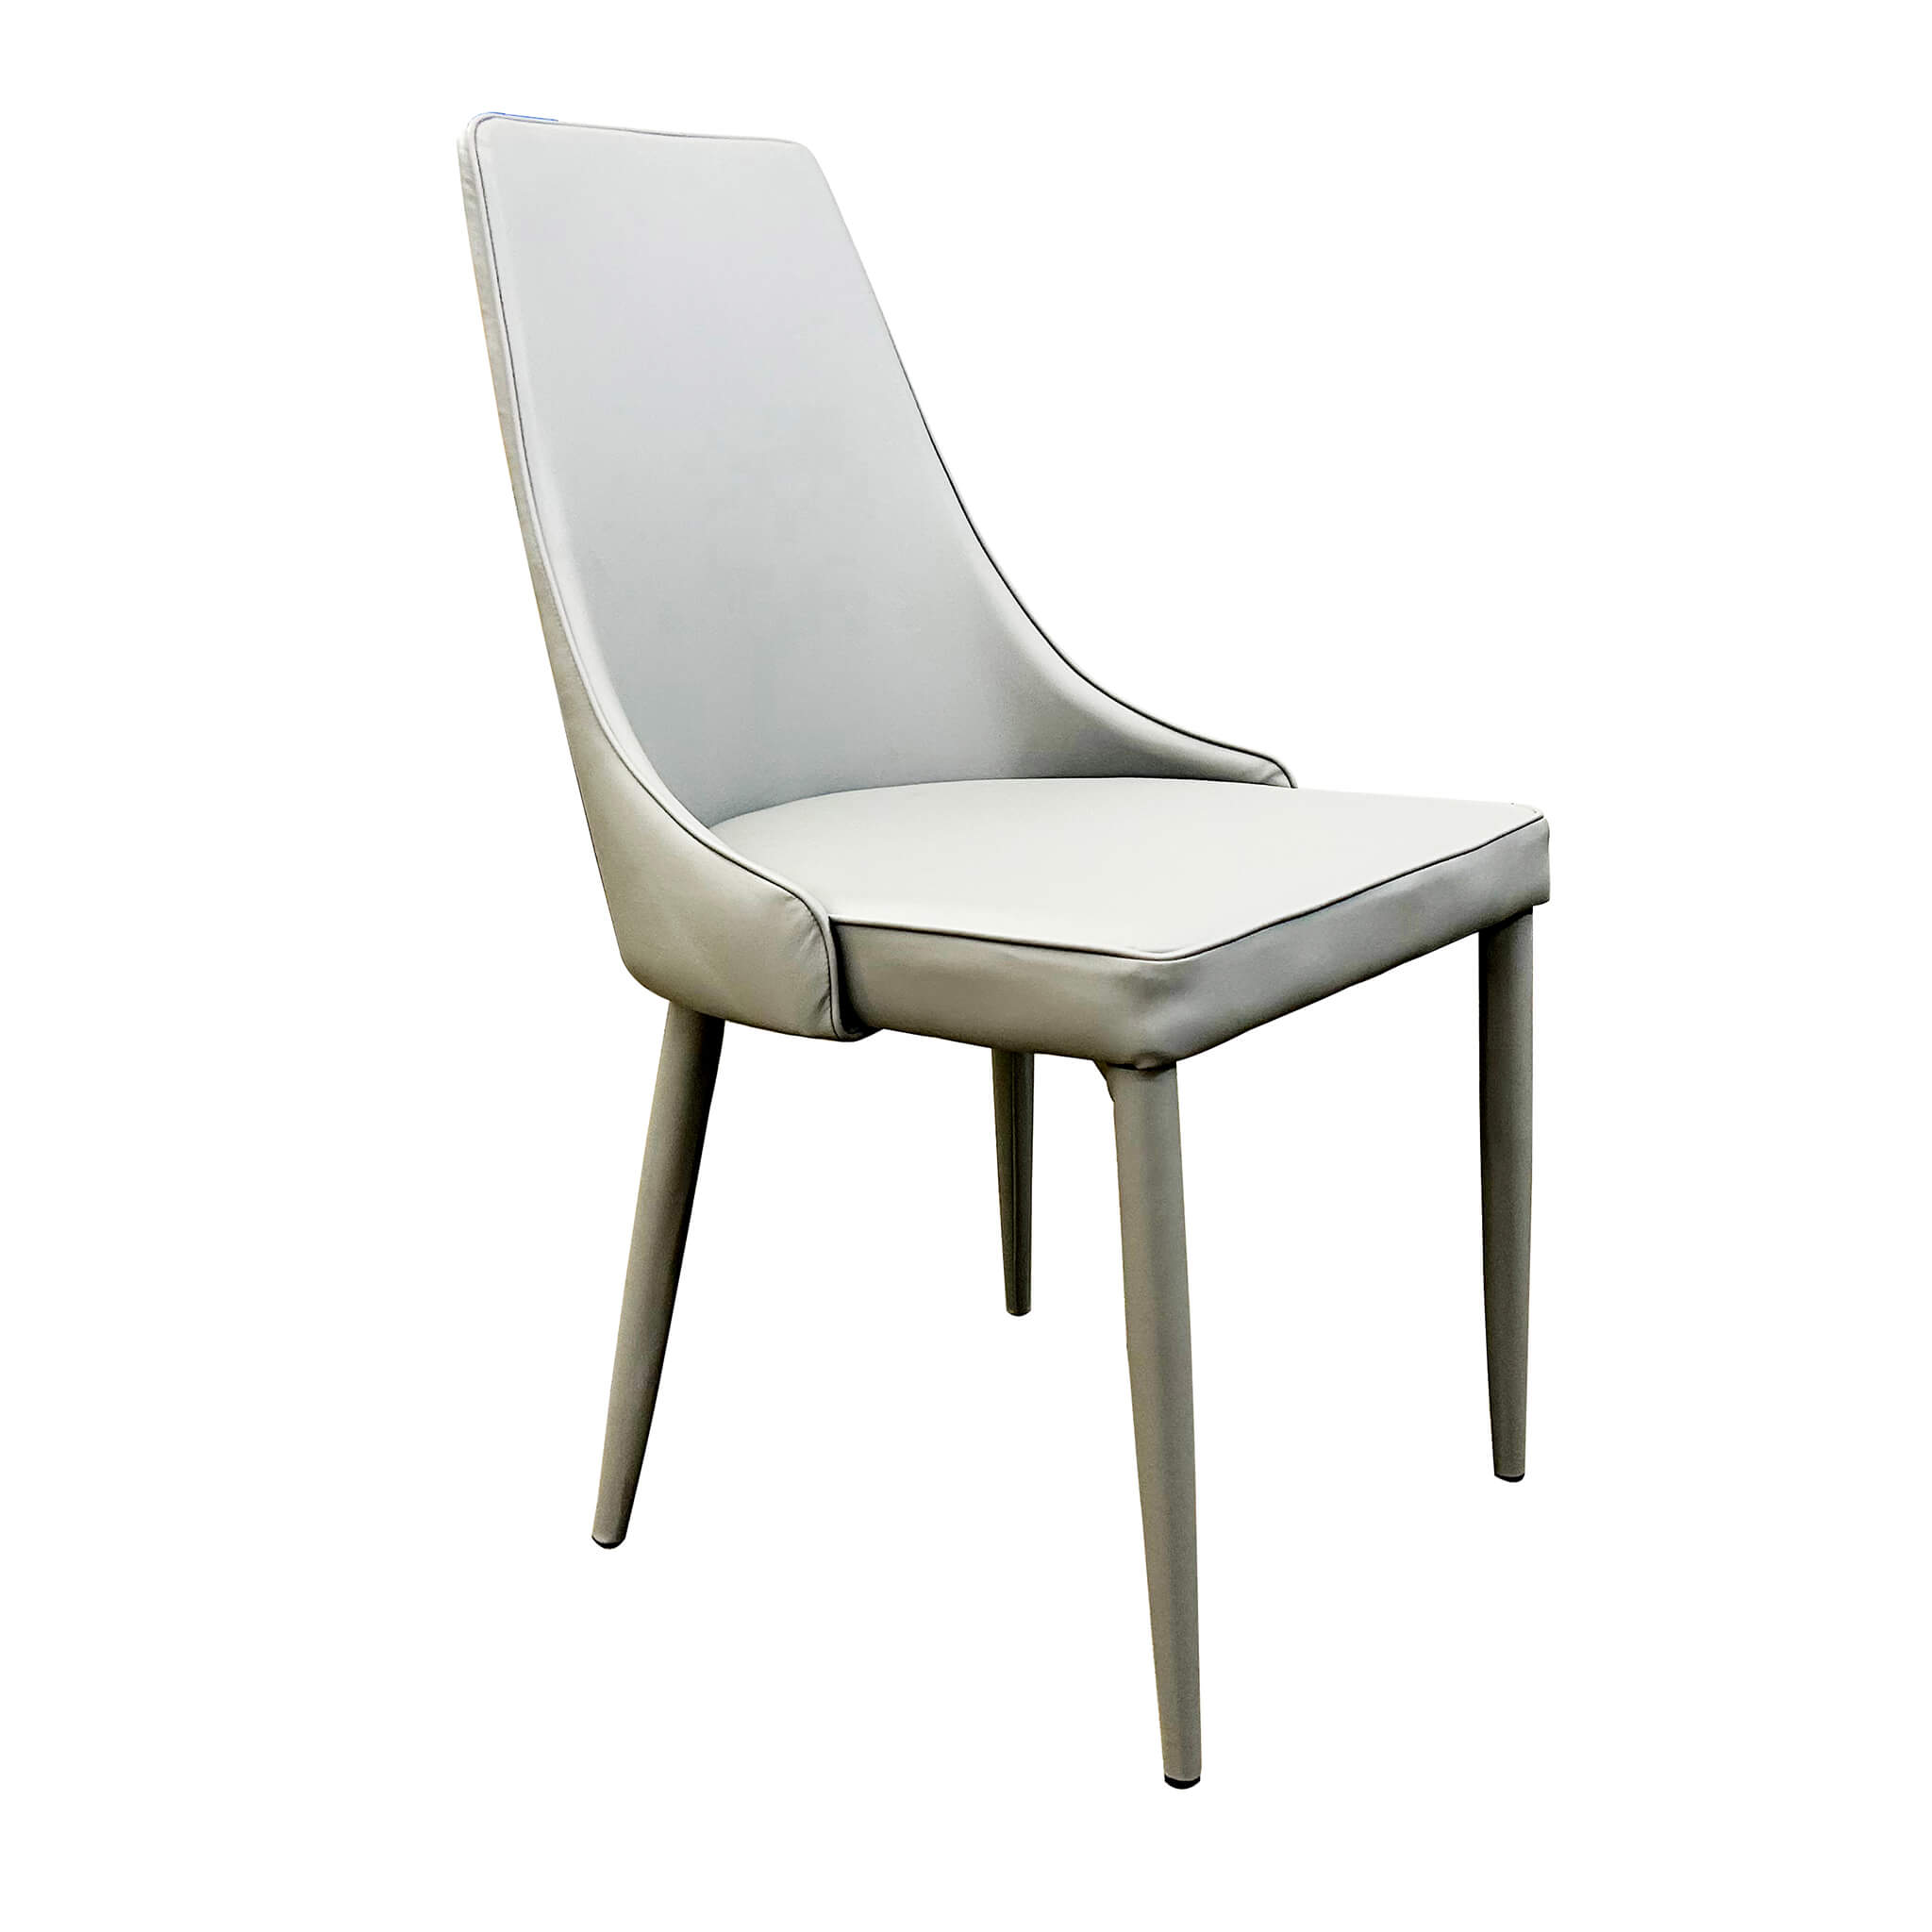 Milani Home sedia moderna in ecopelle di design moderno industrial cm 46,5 x 59 x 89 h Grigio chiaro 60 x 87.5 x 49.5 cm